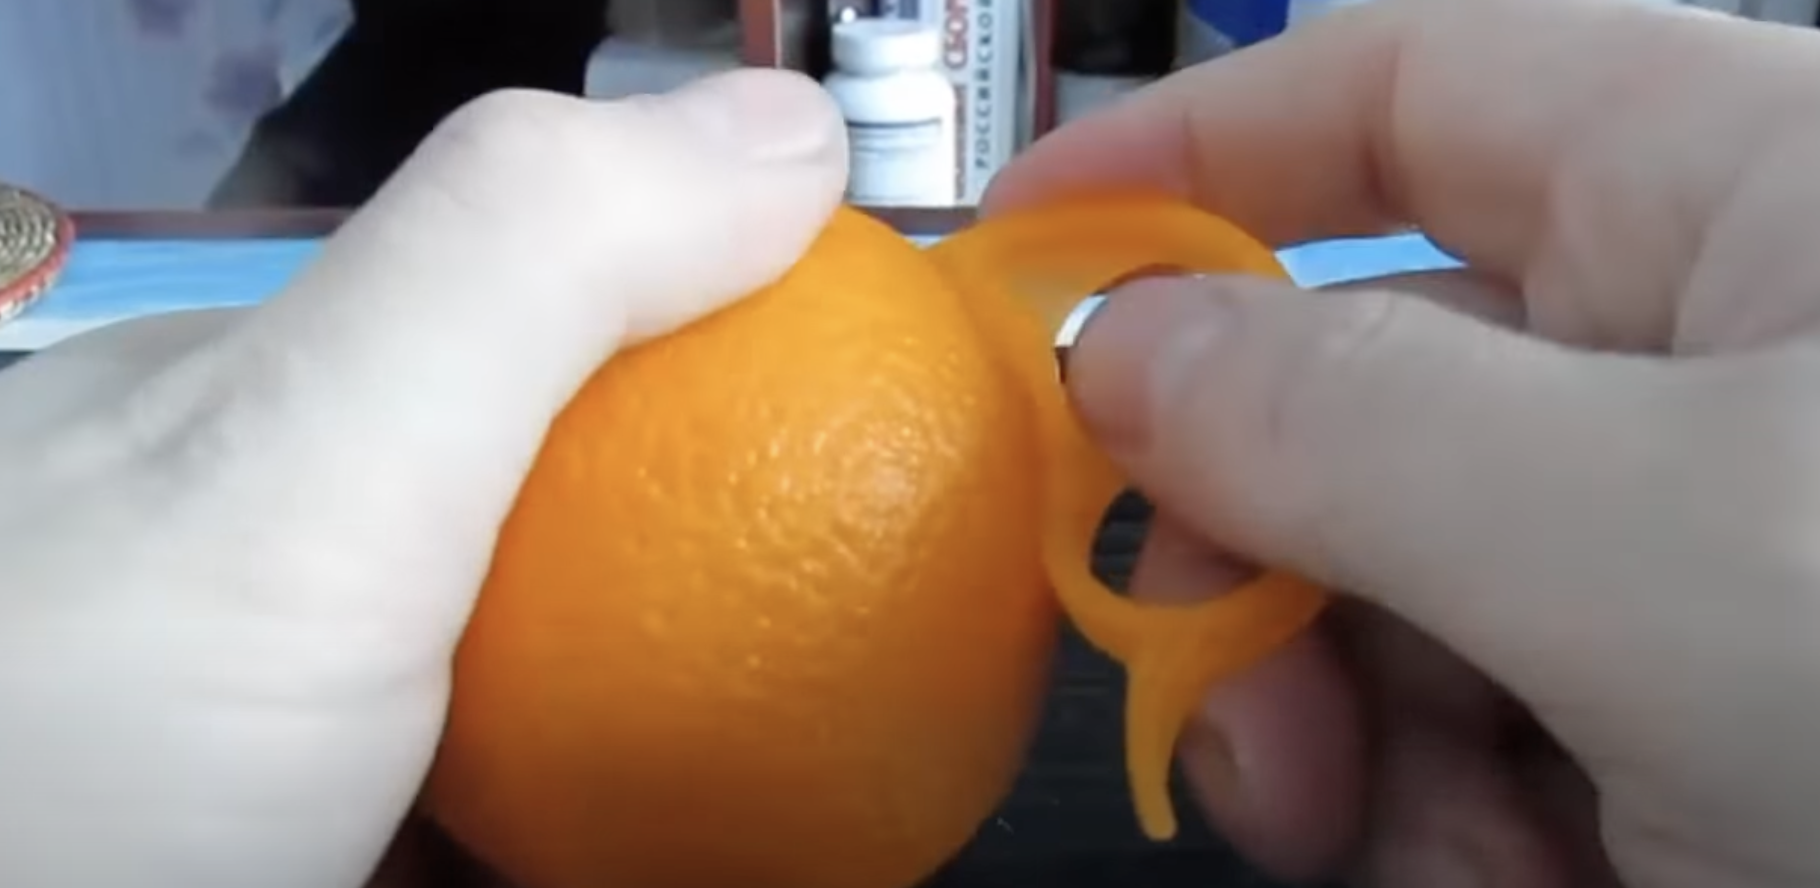 Una persona utilizando un pelador de naranjas | Foto: youtube.com/zetira4582